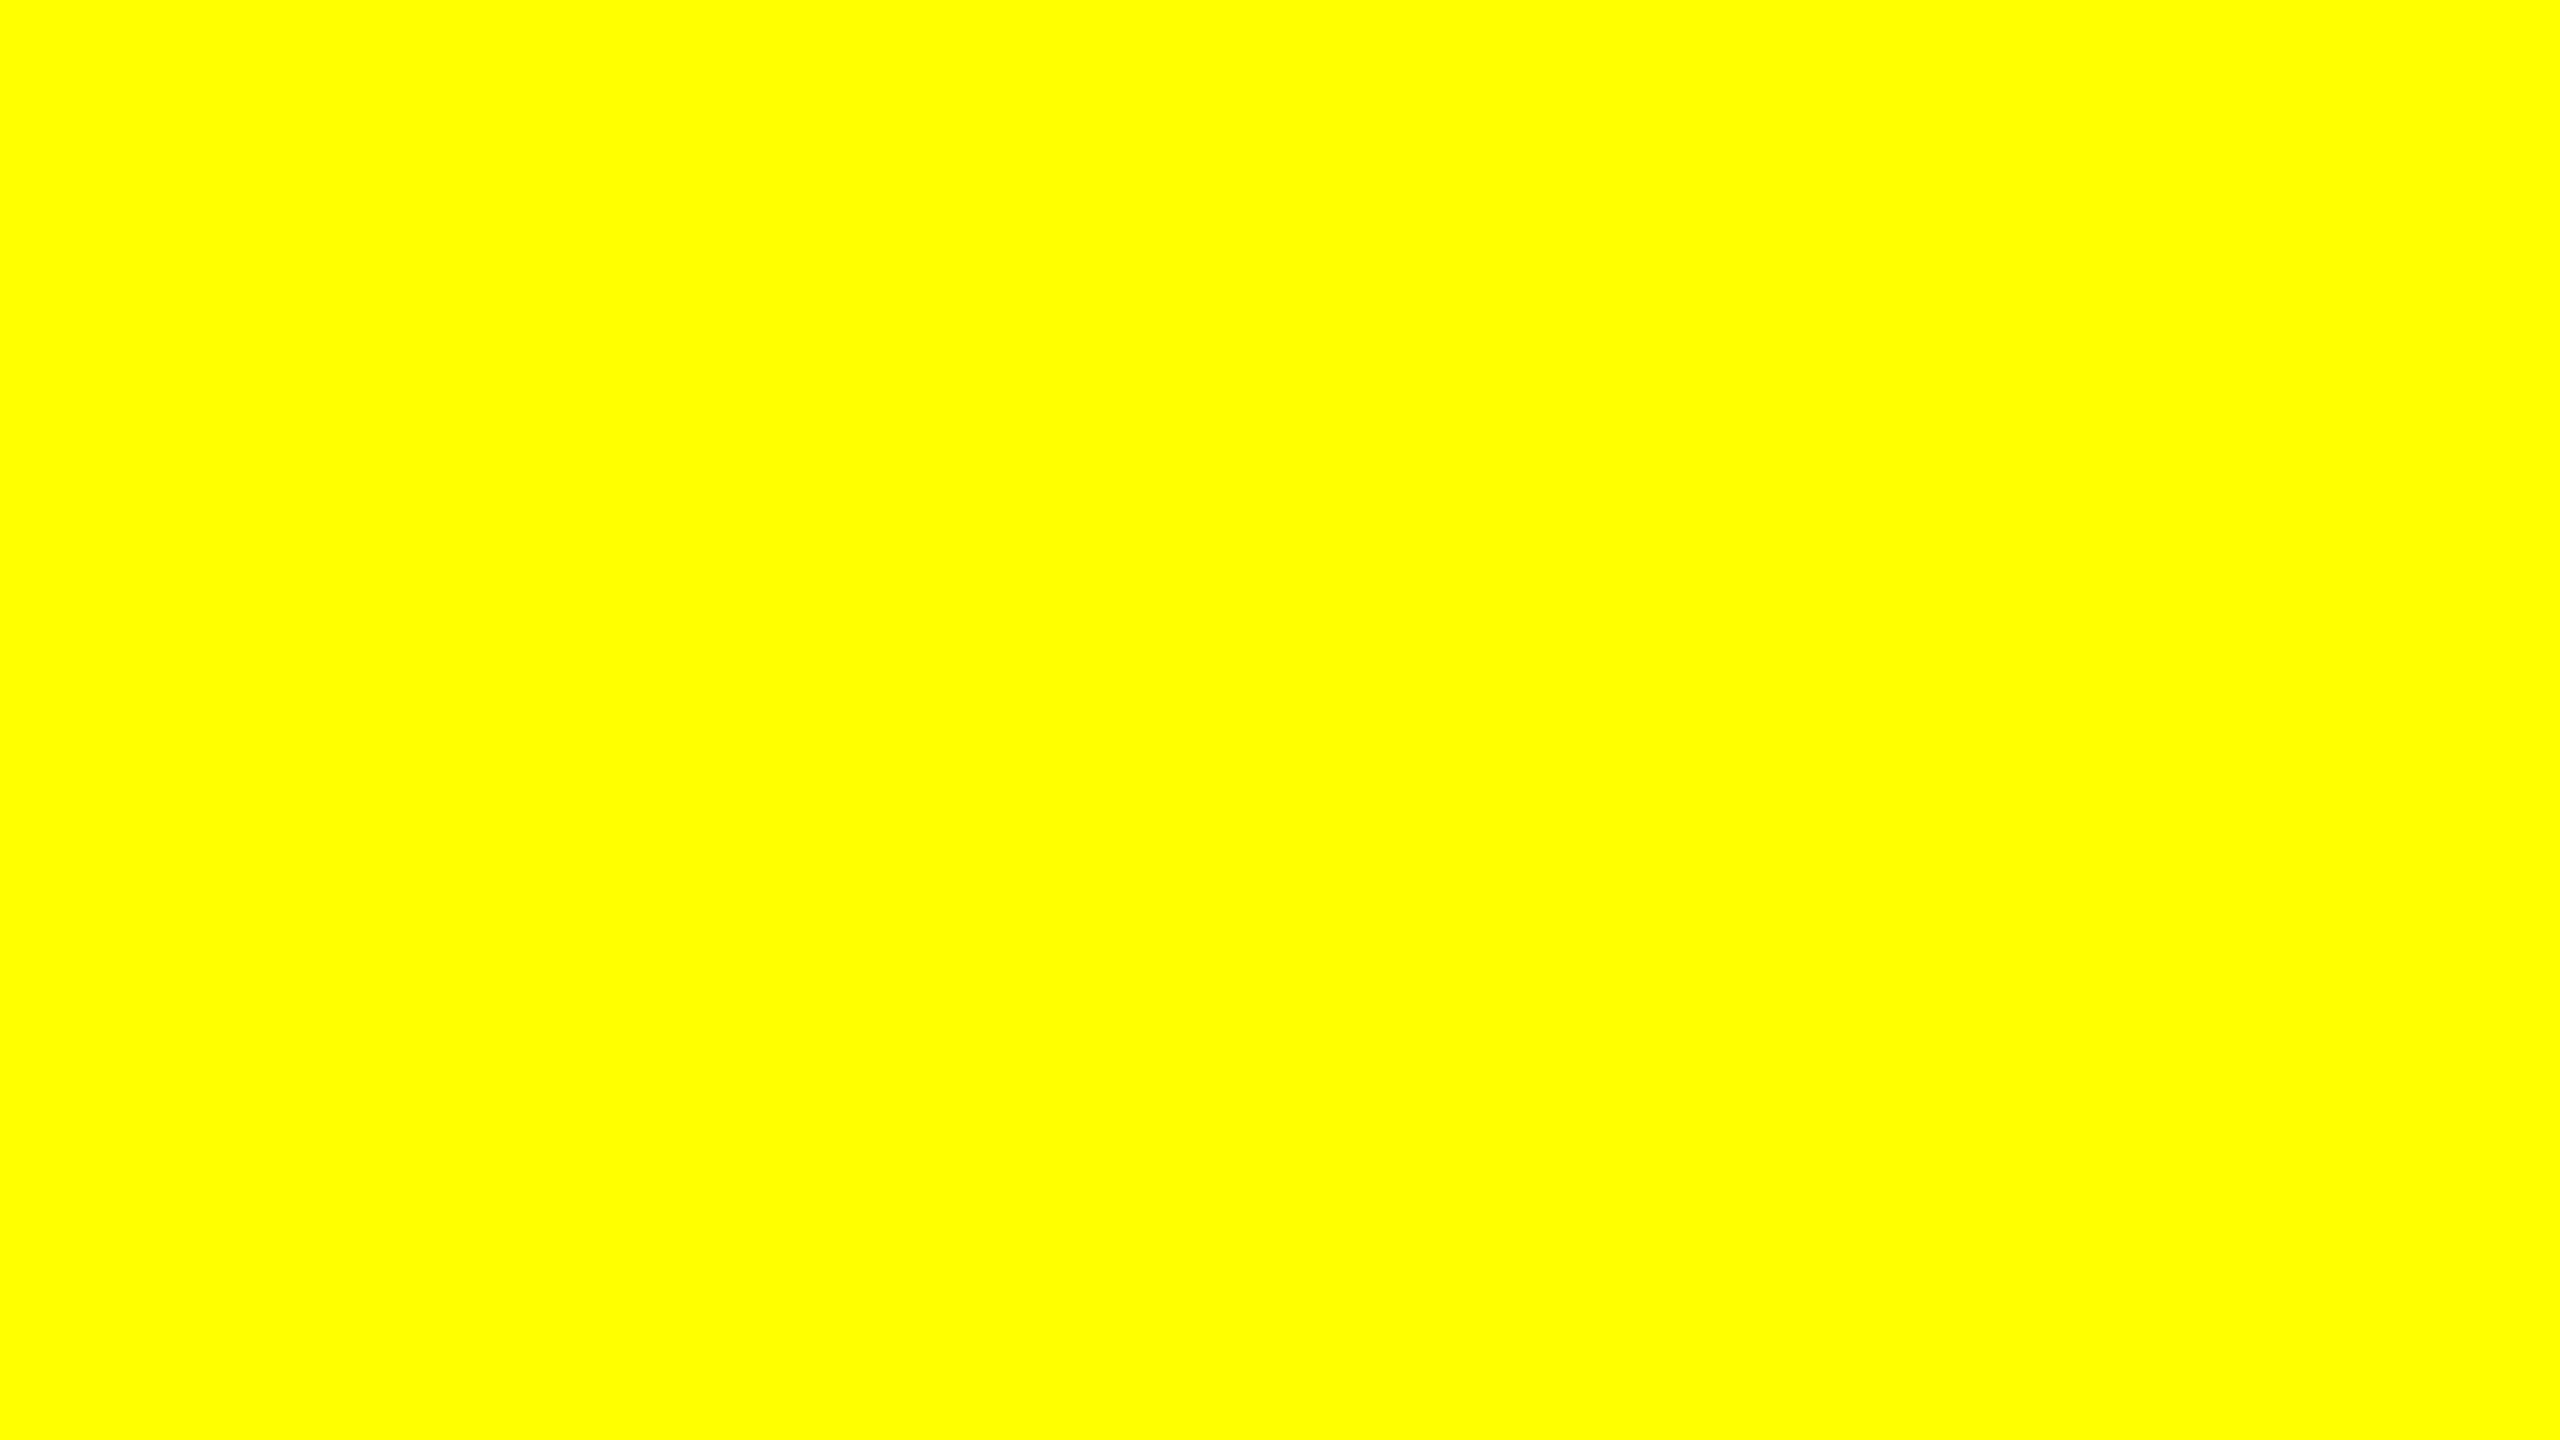 Download Yellow Aesthetic Desktop Wallpapers - Top Free Yellow Aesthetic Desktop Backgrounds ...